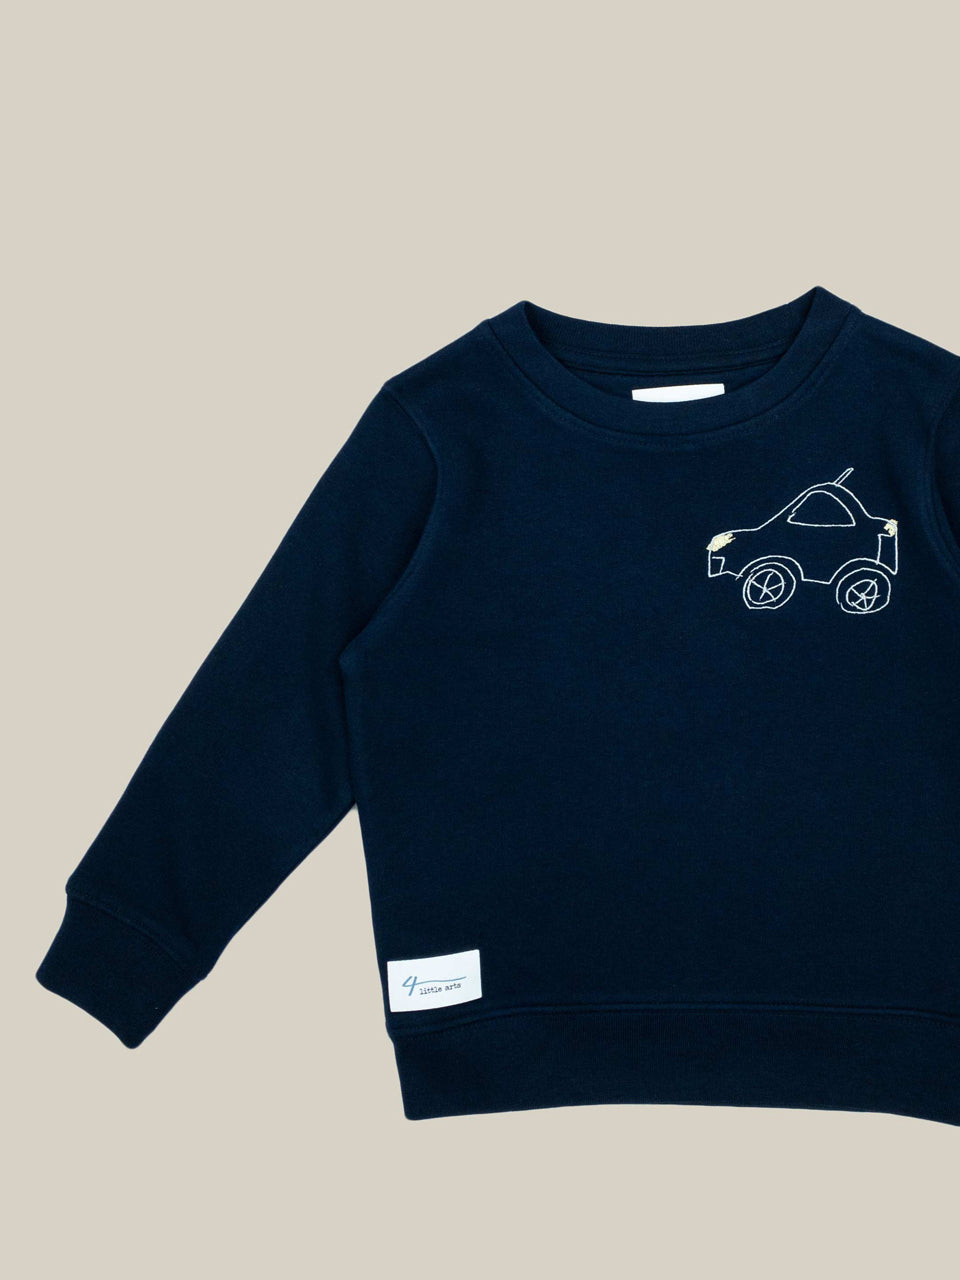 4littlearts Kids Sweater in Navy mit Auto Stickerei. Super weiche Bio-Baumwolle. Unisex Schnitt und veredelt in Wuppertal.